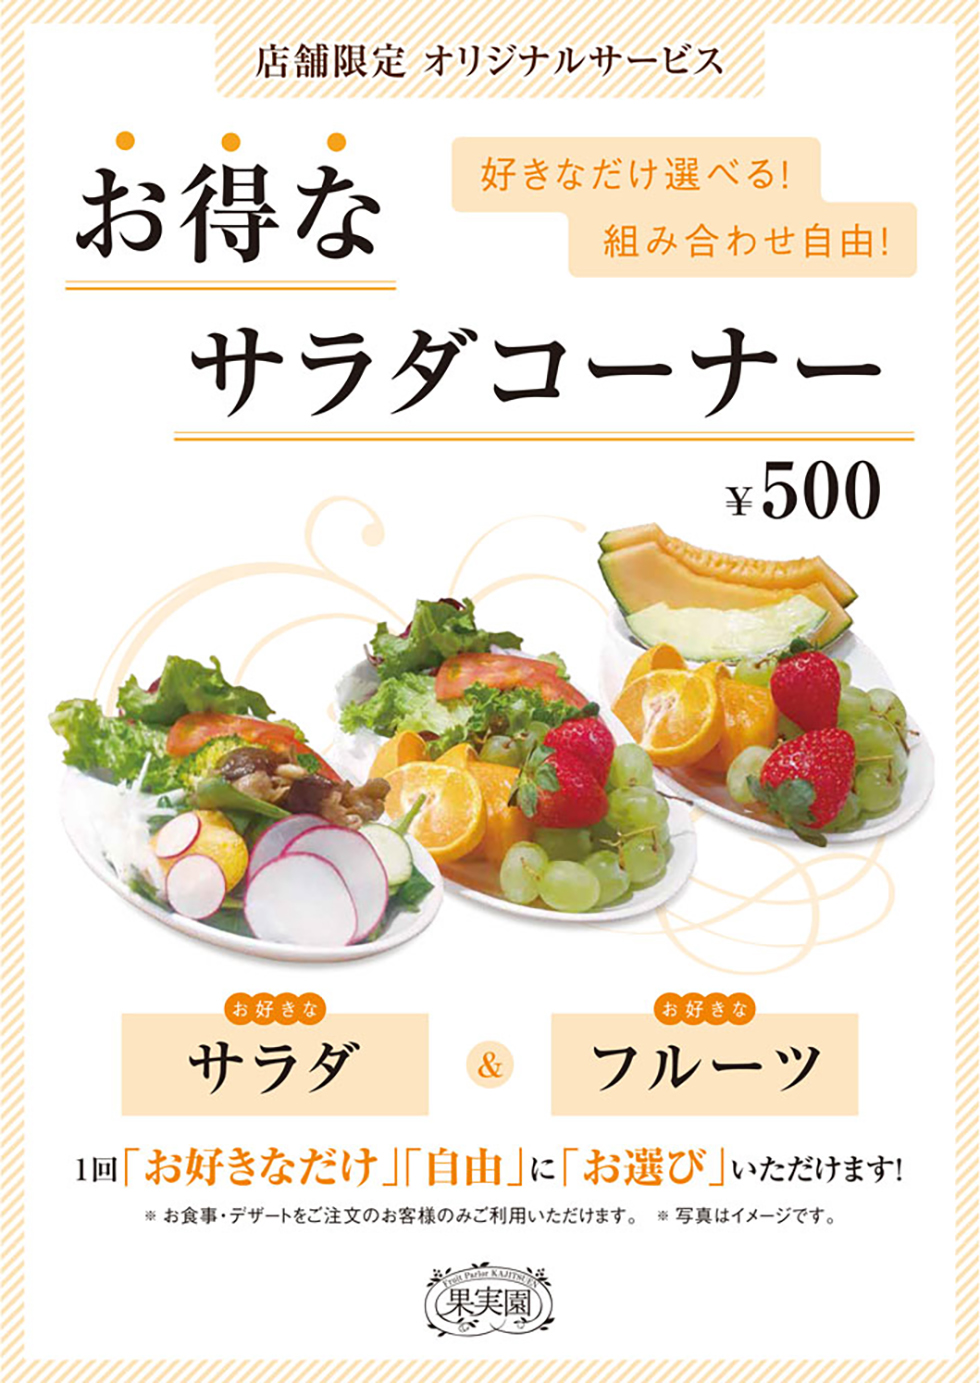 飯田橋店の食事メニュー定番お得なサラダコーナー